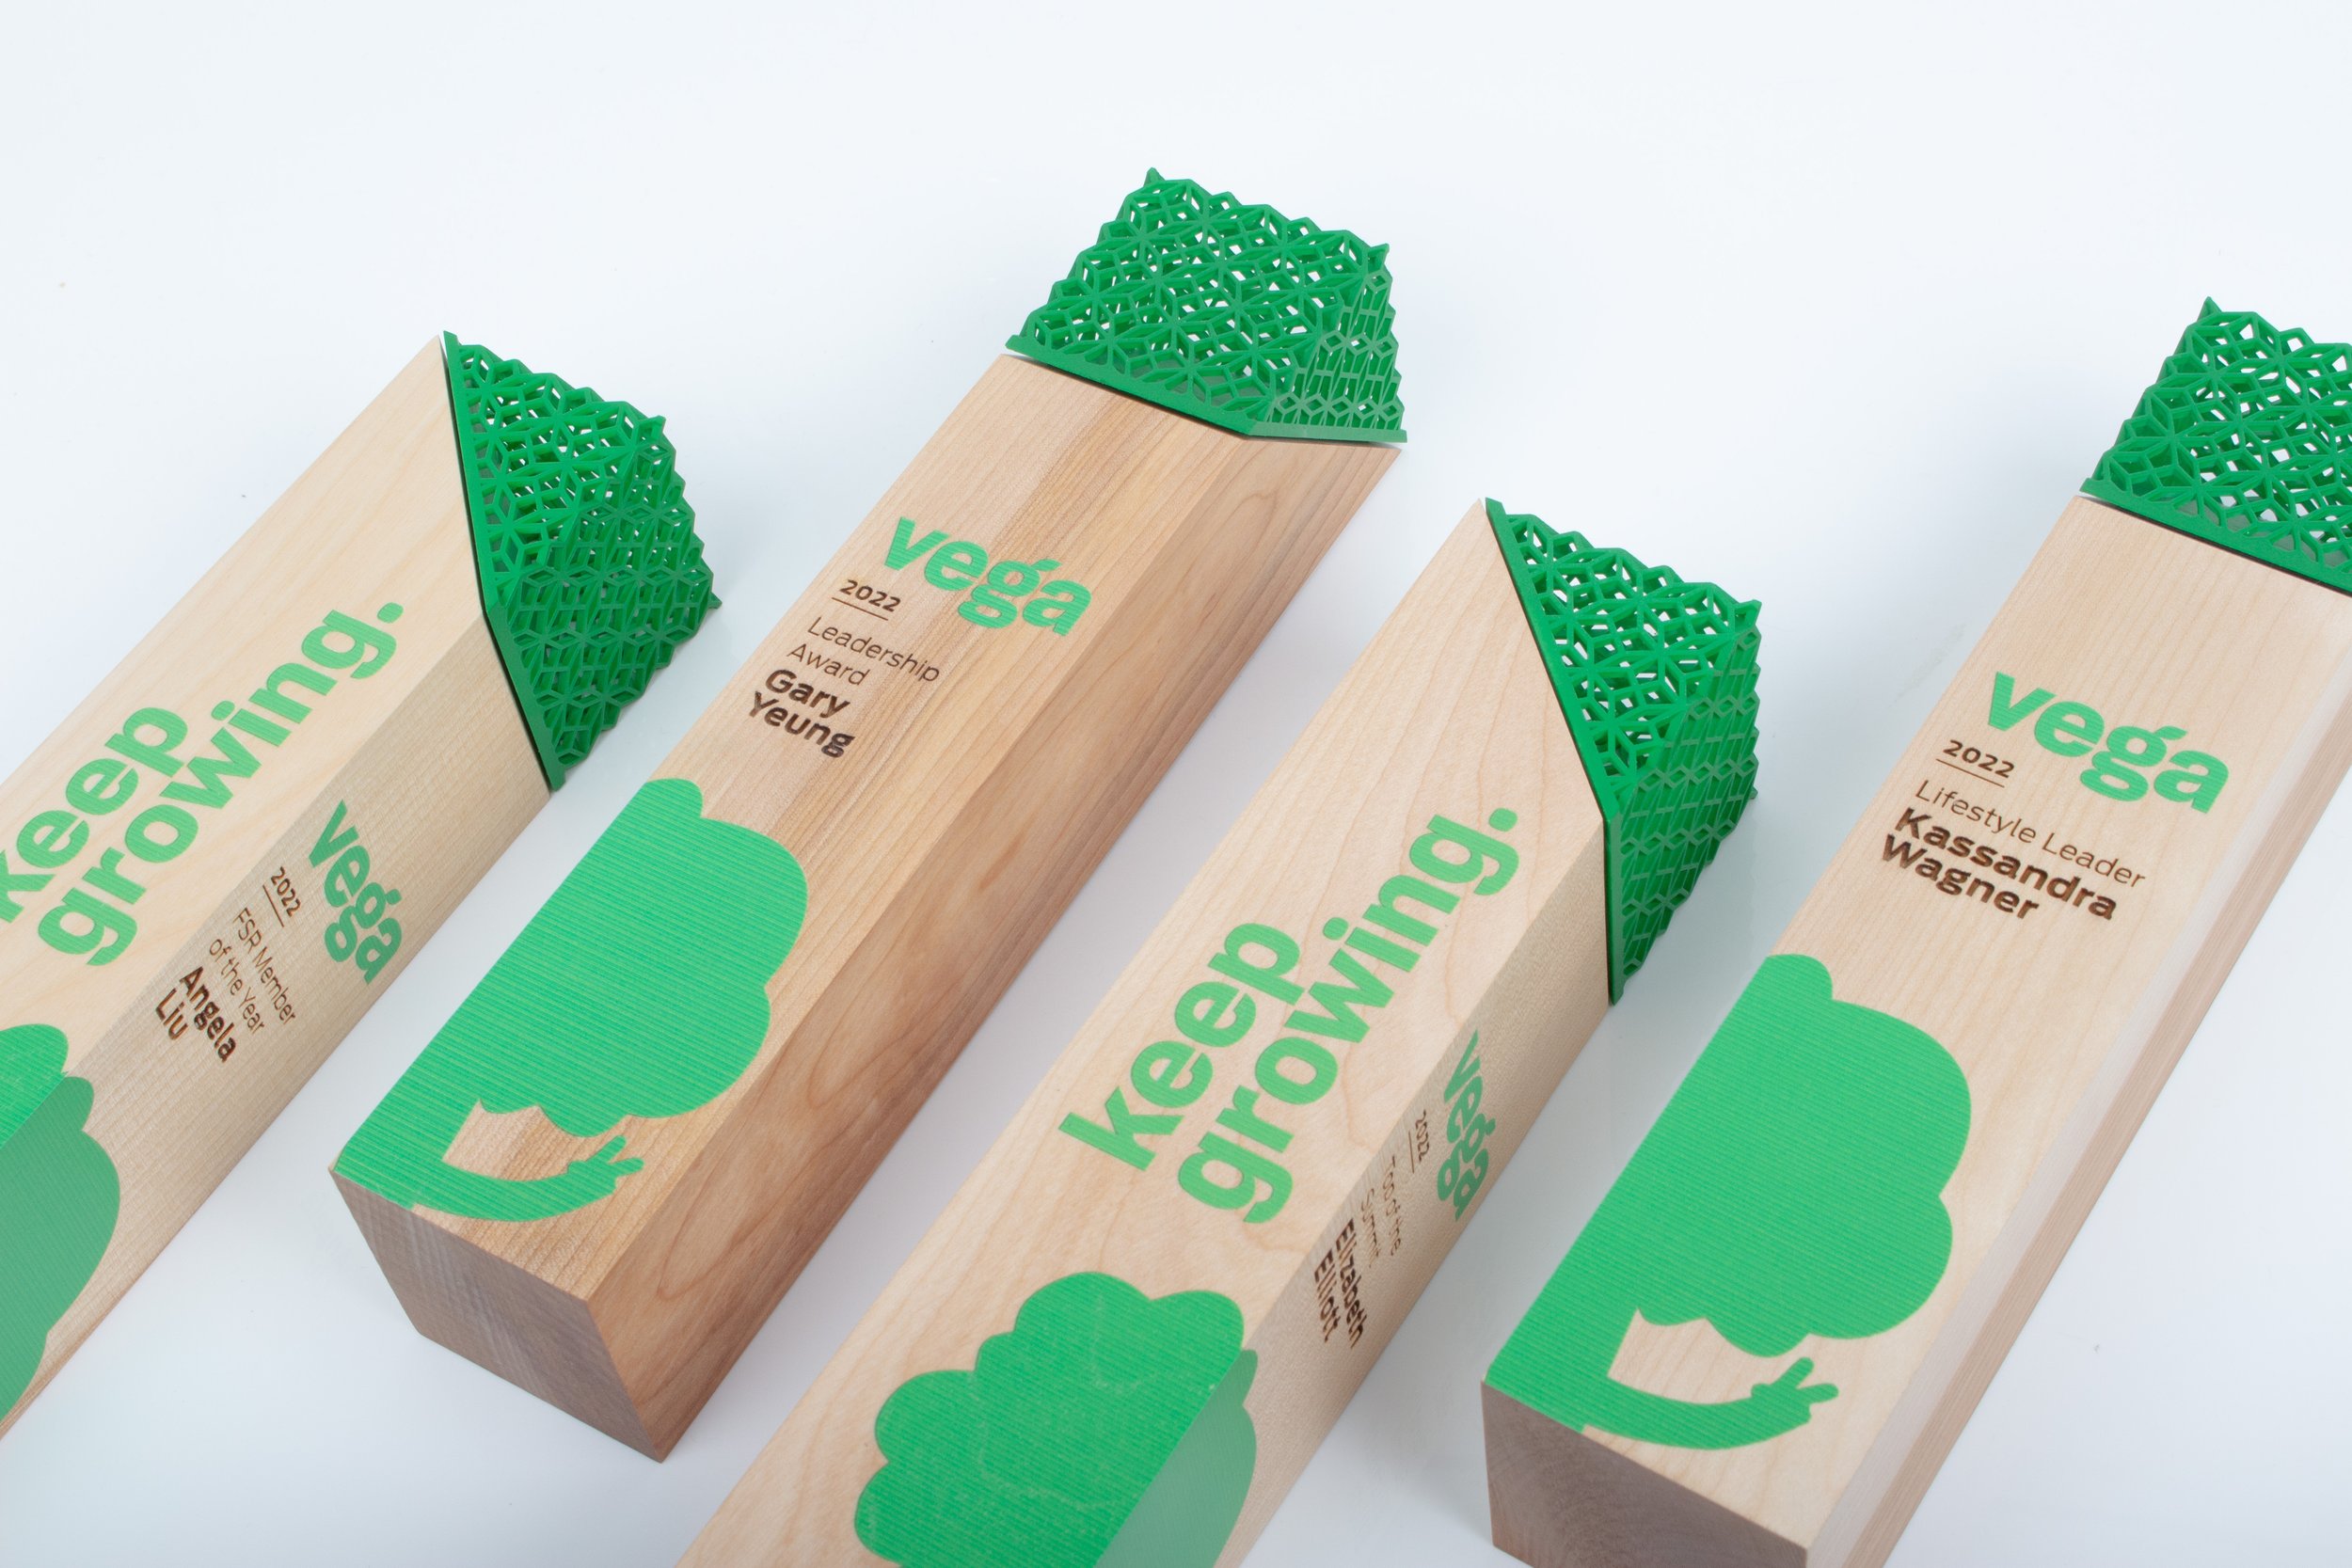 birch wood bespoke custom handcrafted awards for vega.jpg